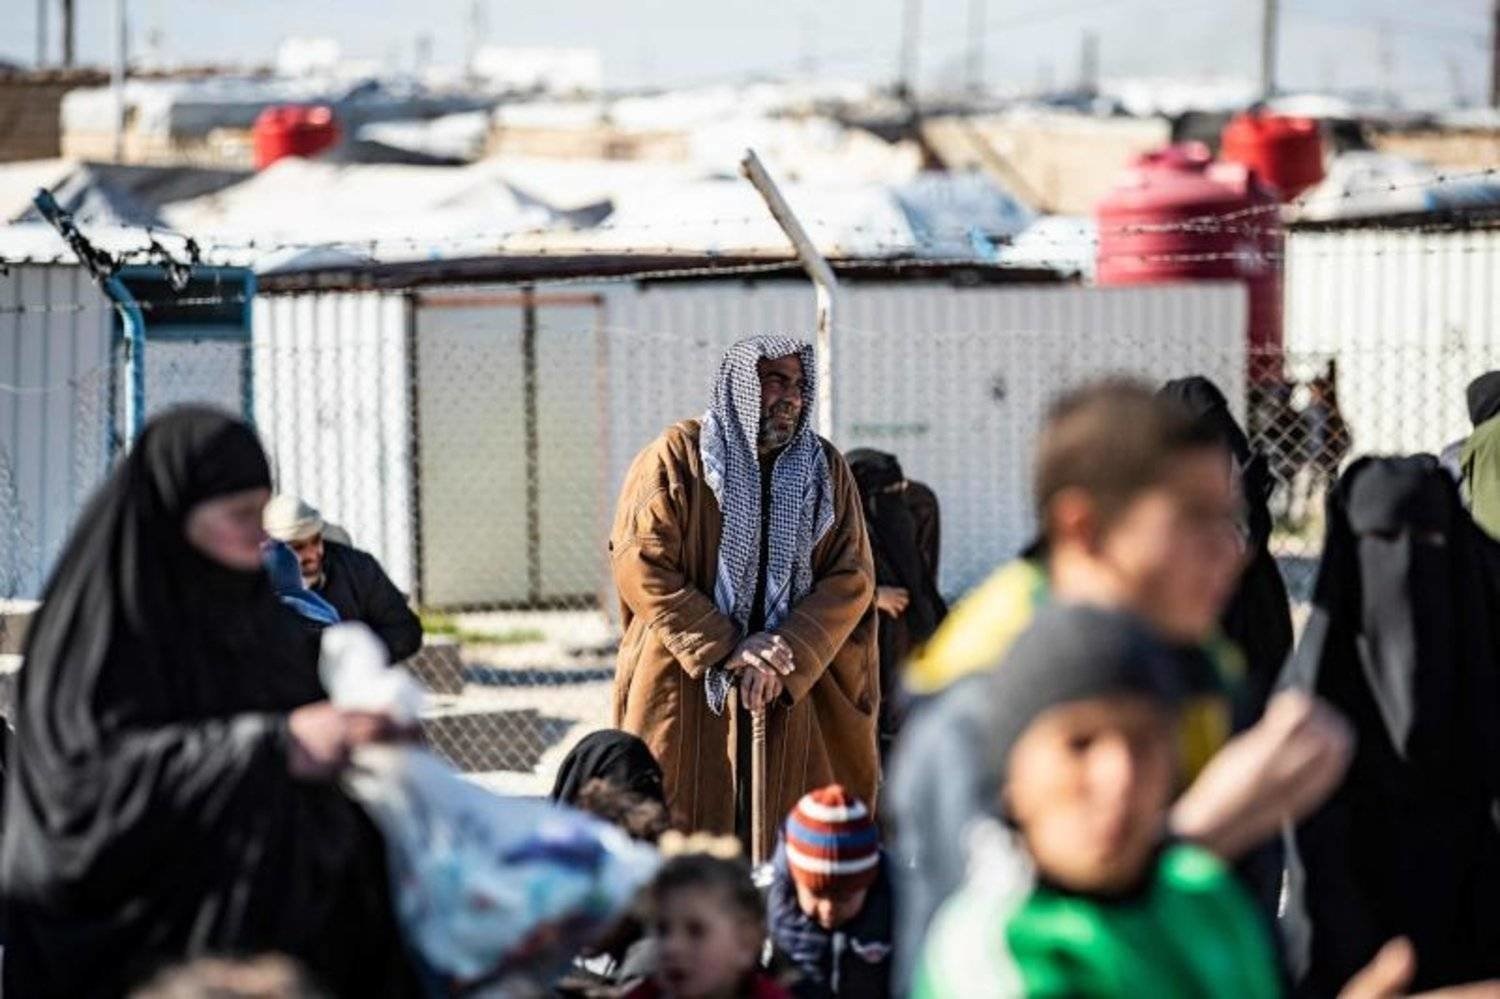 คีรกิซสถานรับเมีย-ลูก ISIS กลับบ้าน 95 คน